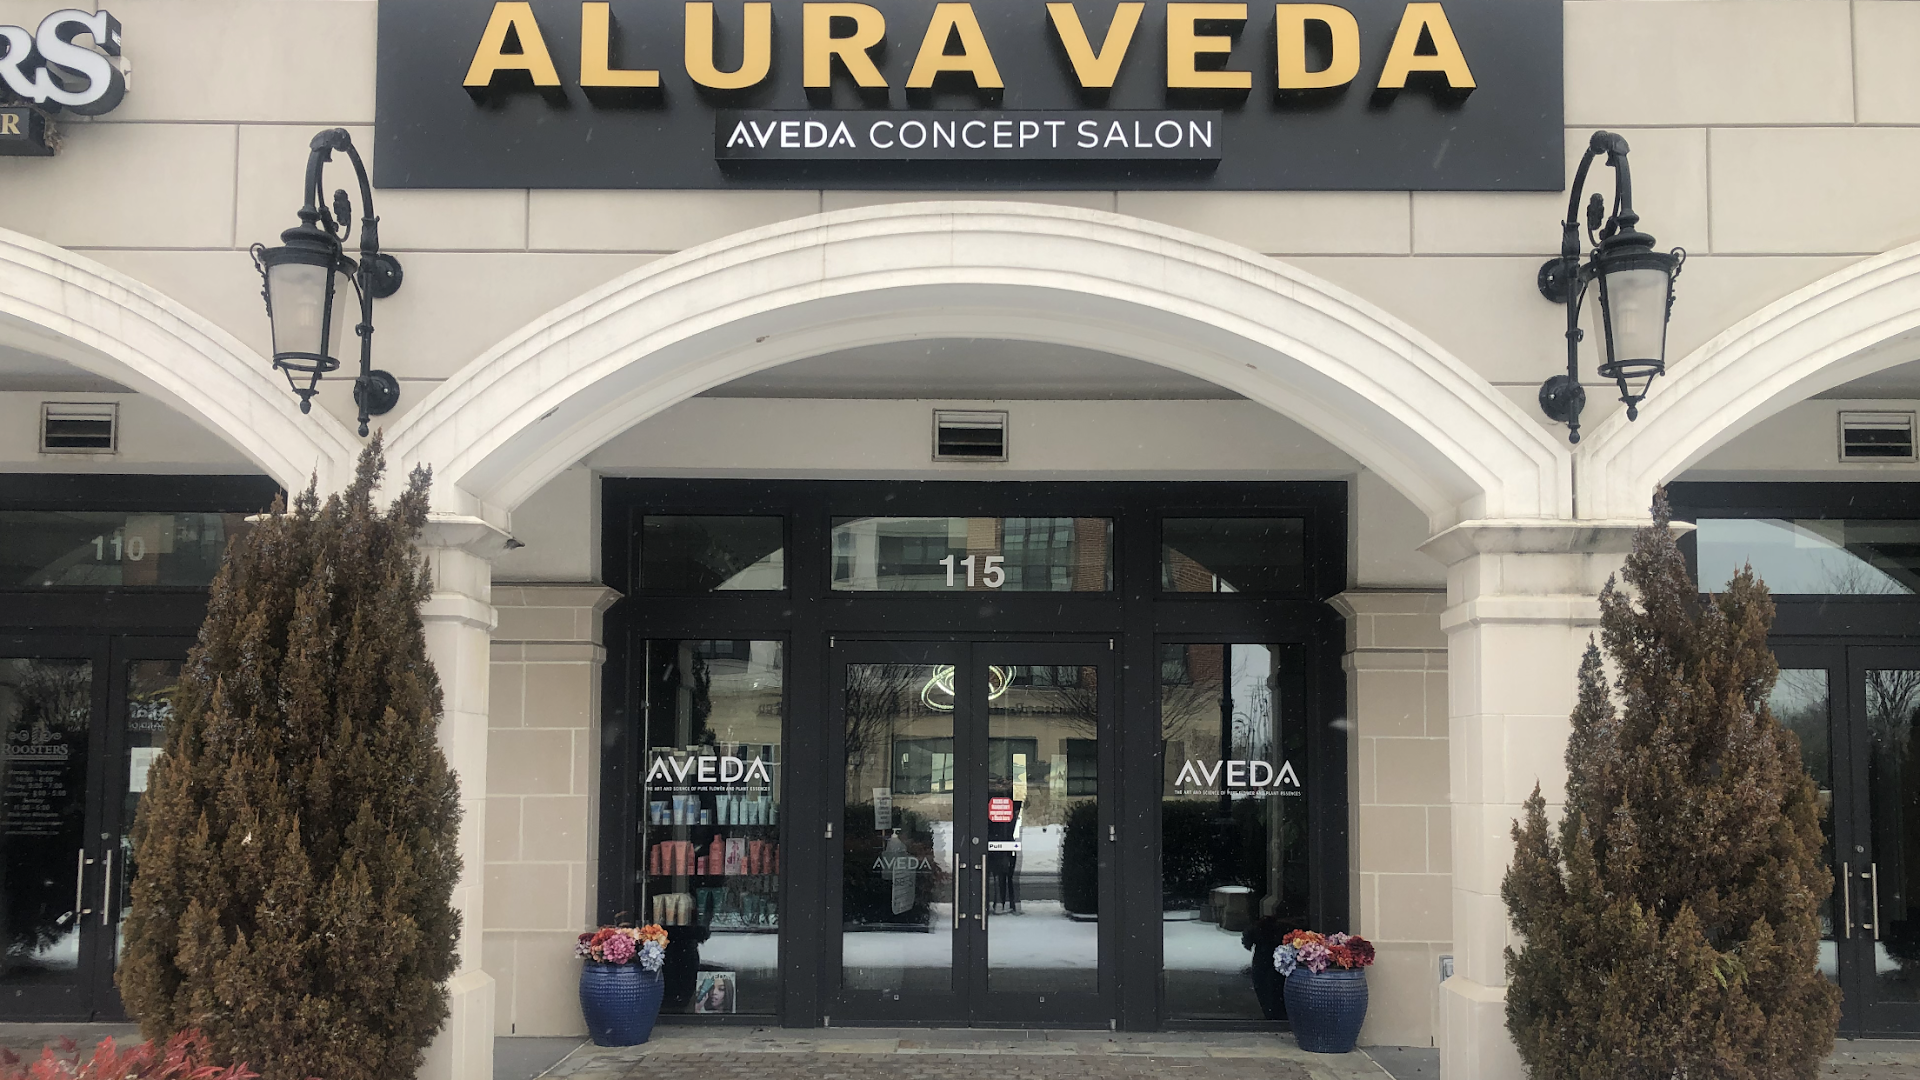 ALURA VEDA / Aveda Concept Salon & MedSpa